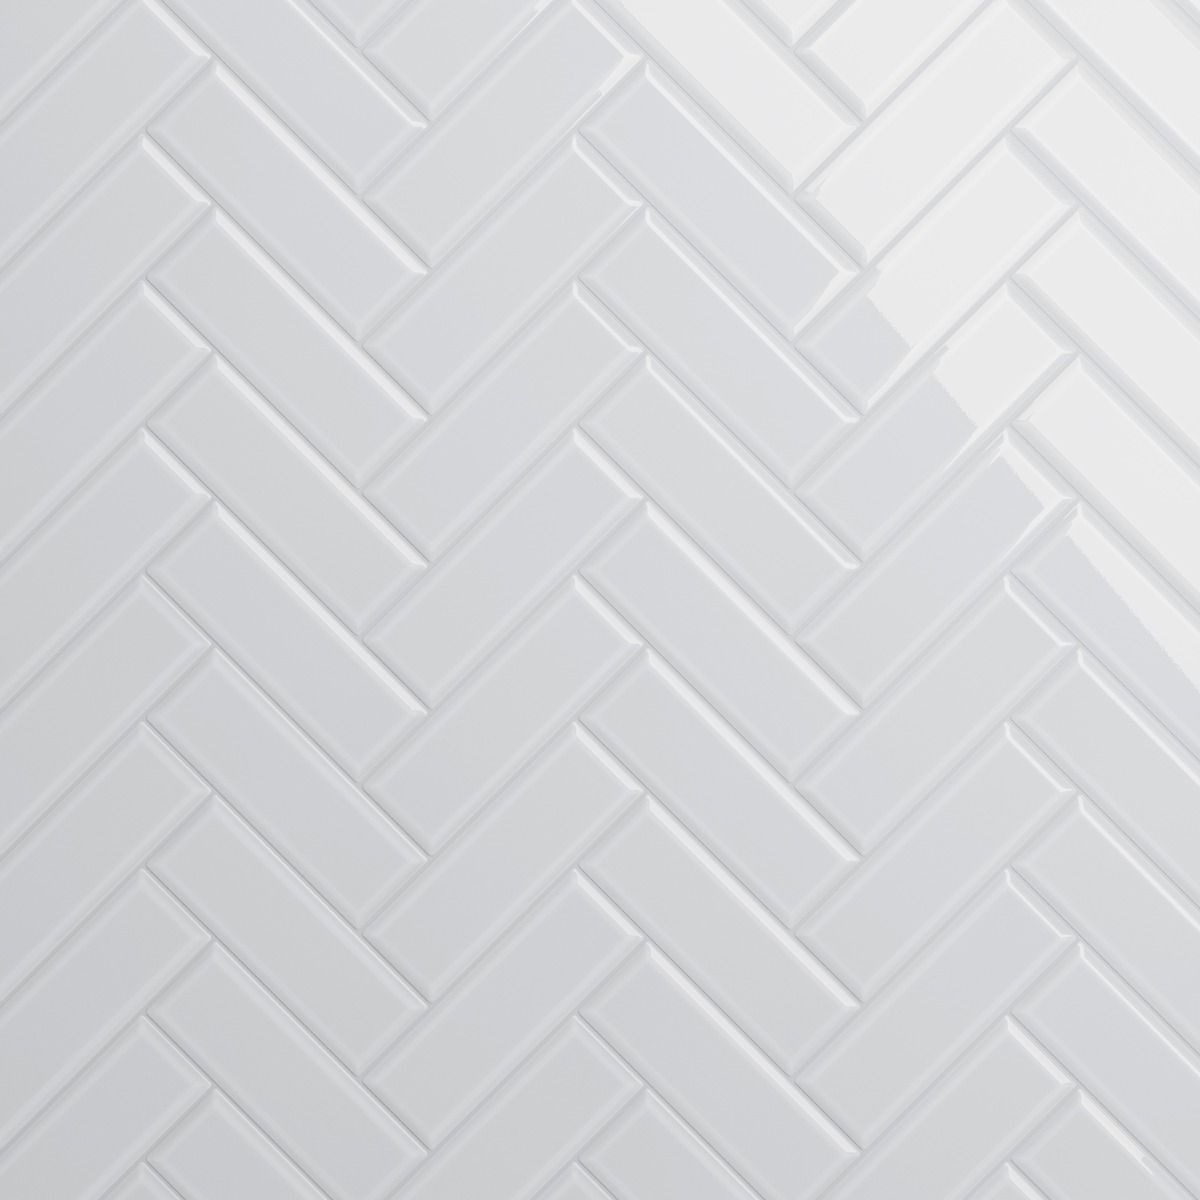 Rise Ice White 4x12 Beveled Glossy Ceramic Tile | Tilebar.com